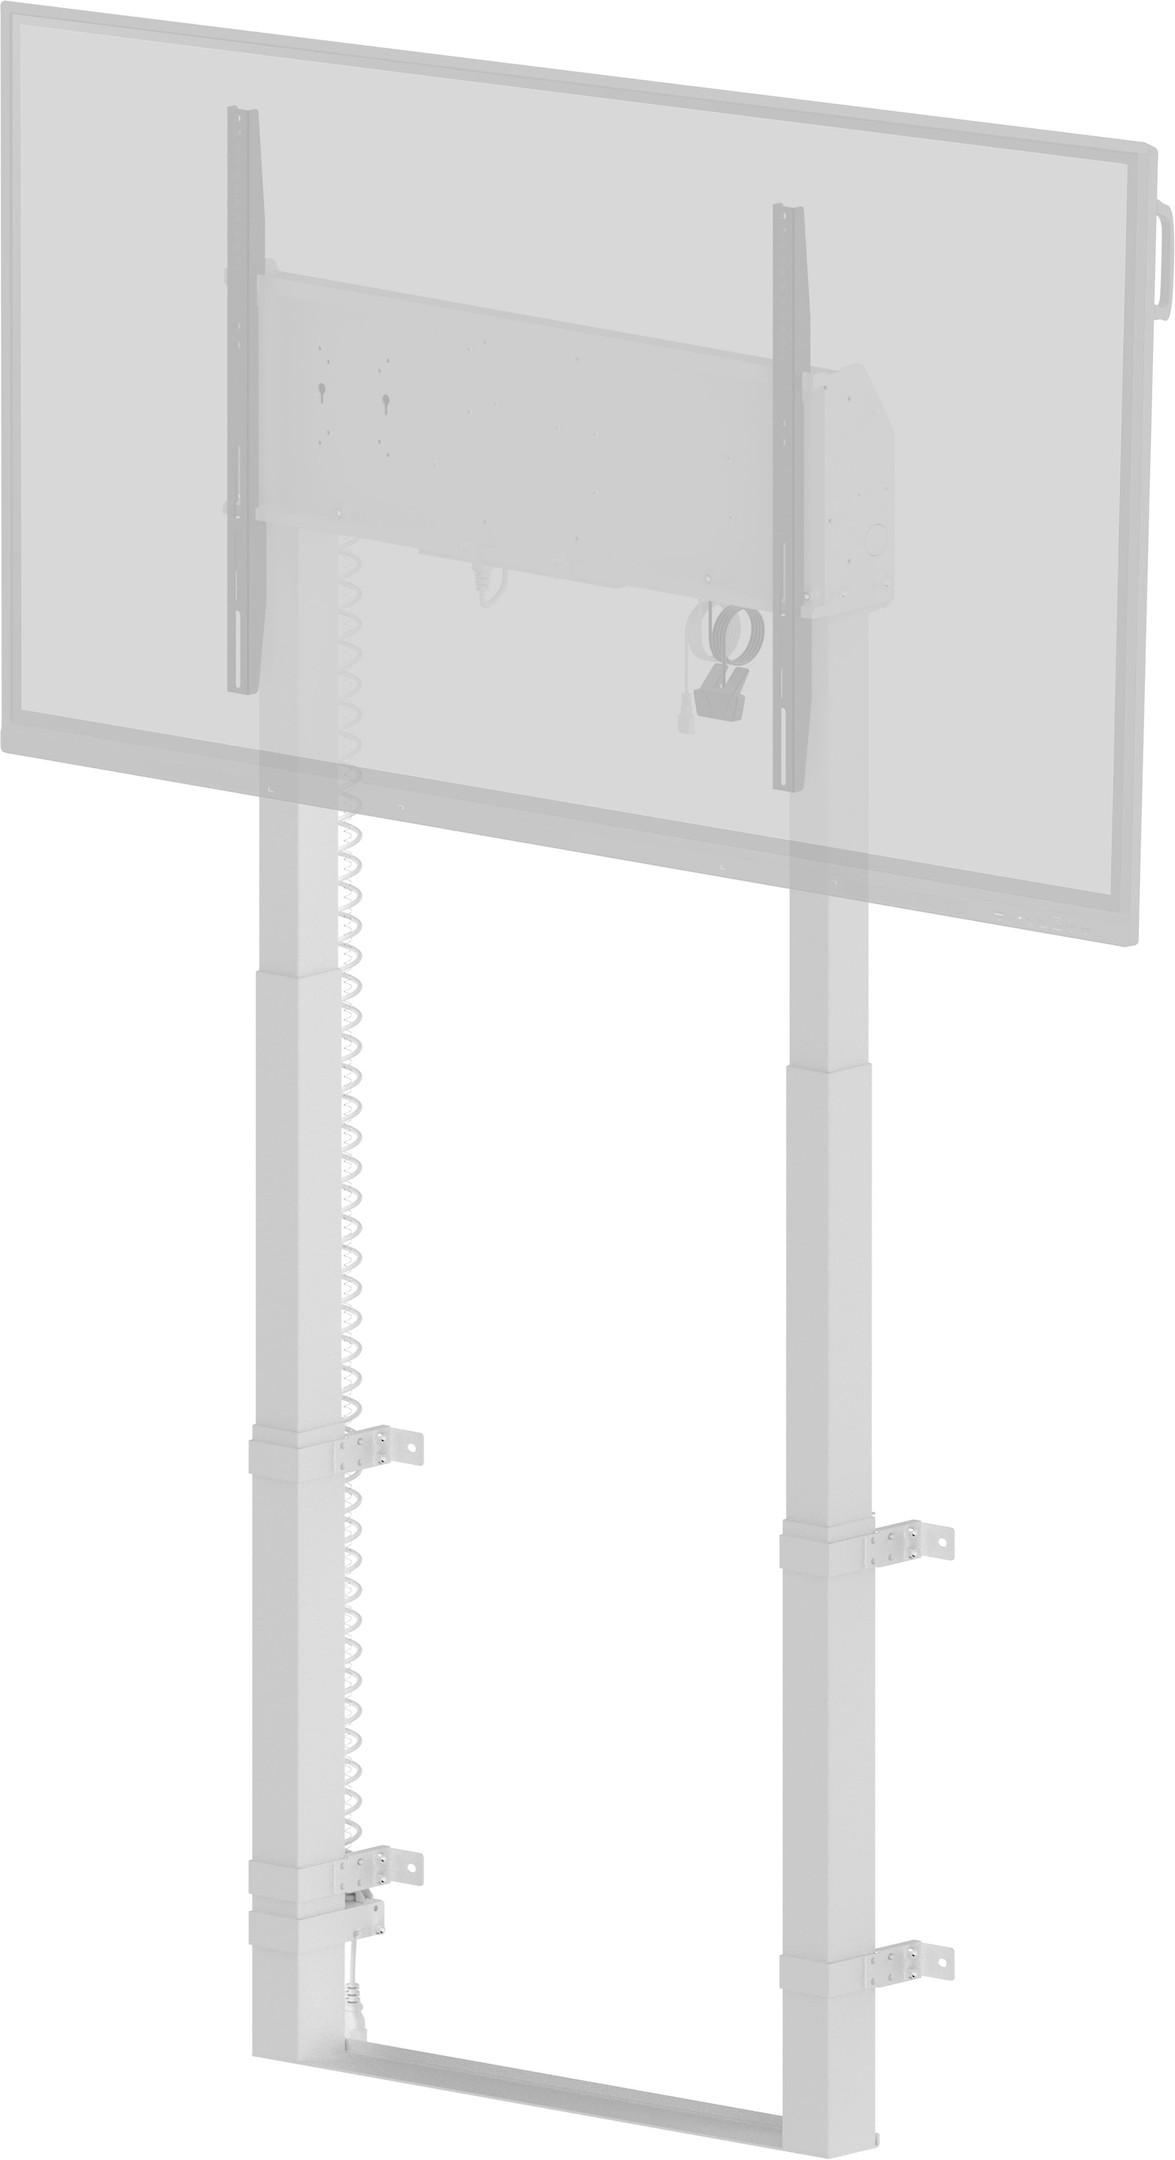 iiyama-MD-WLIFT2031-W1-Elektrisch-stationair-pyloon-systeem-met-een-kolom-voor-beeldschermen-tot-98